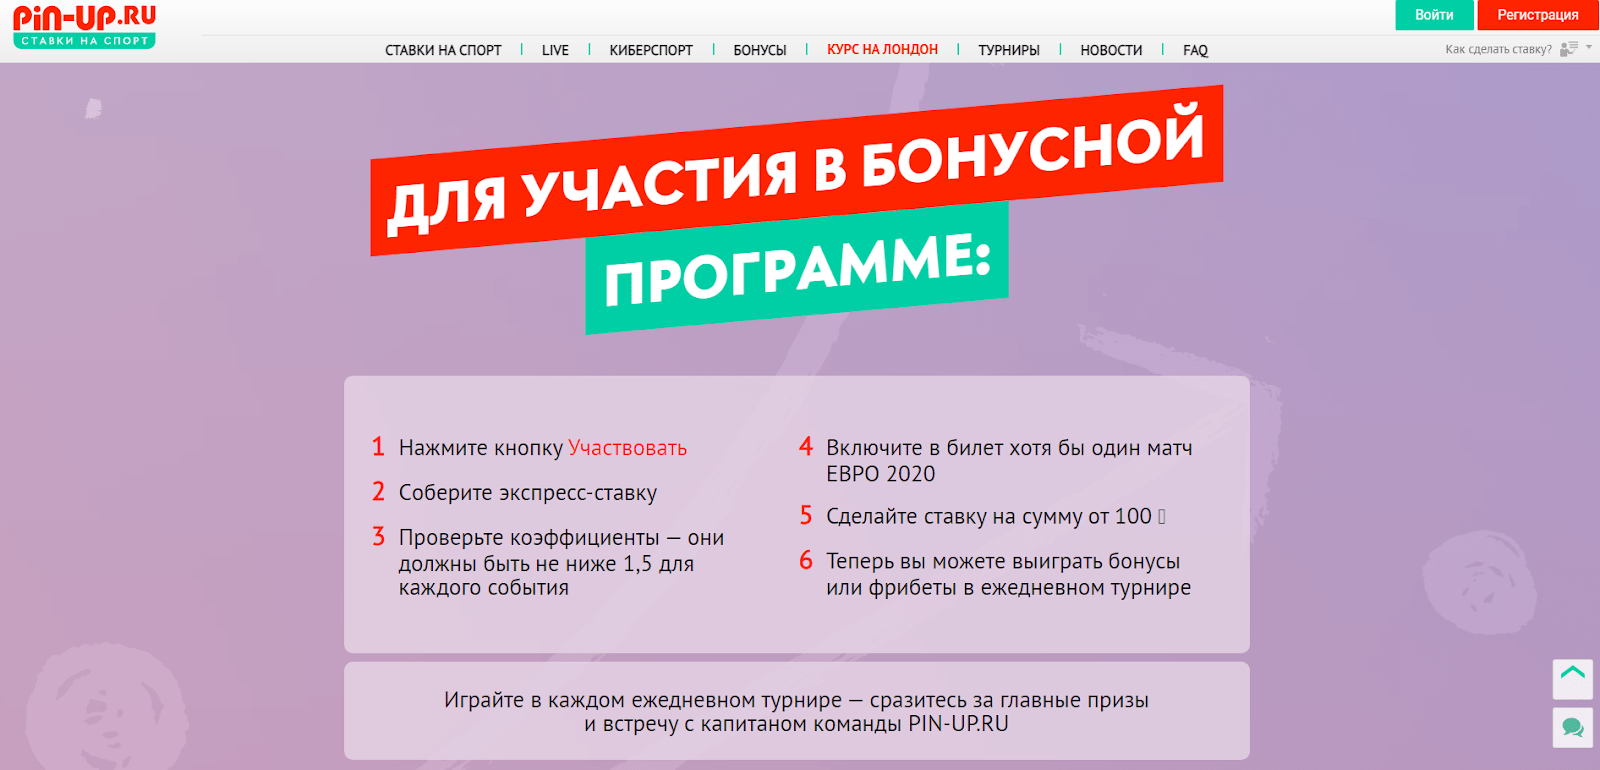 Условия акции от Pin-up.ru